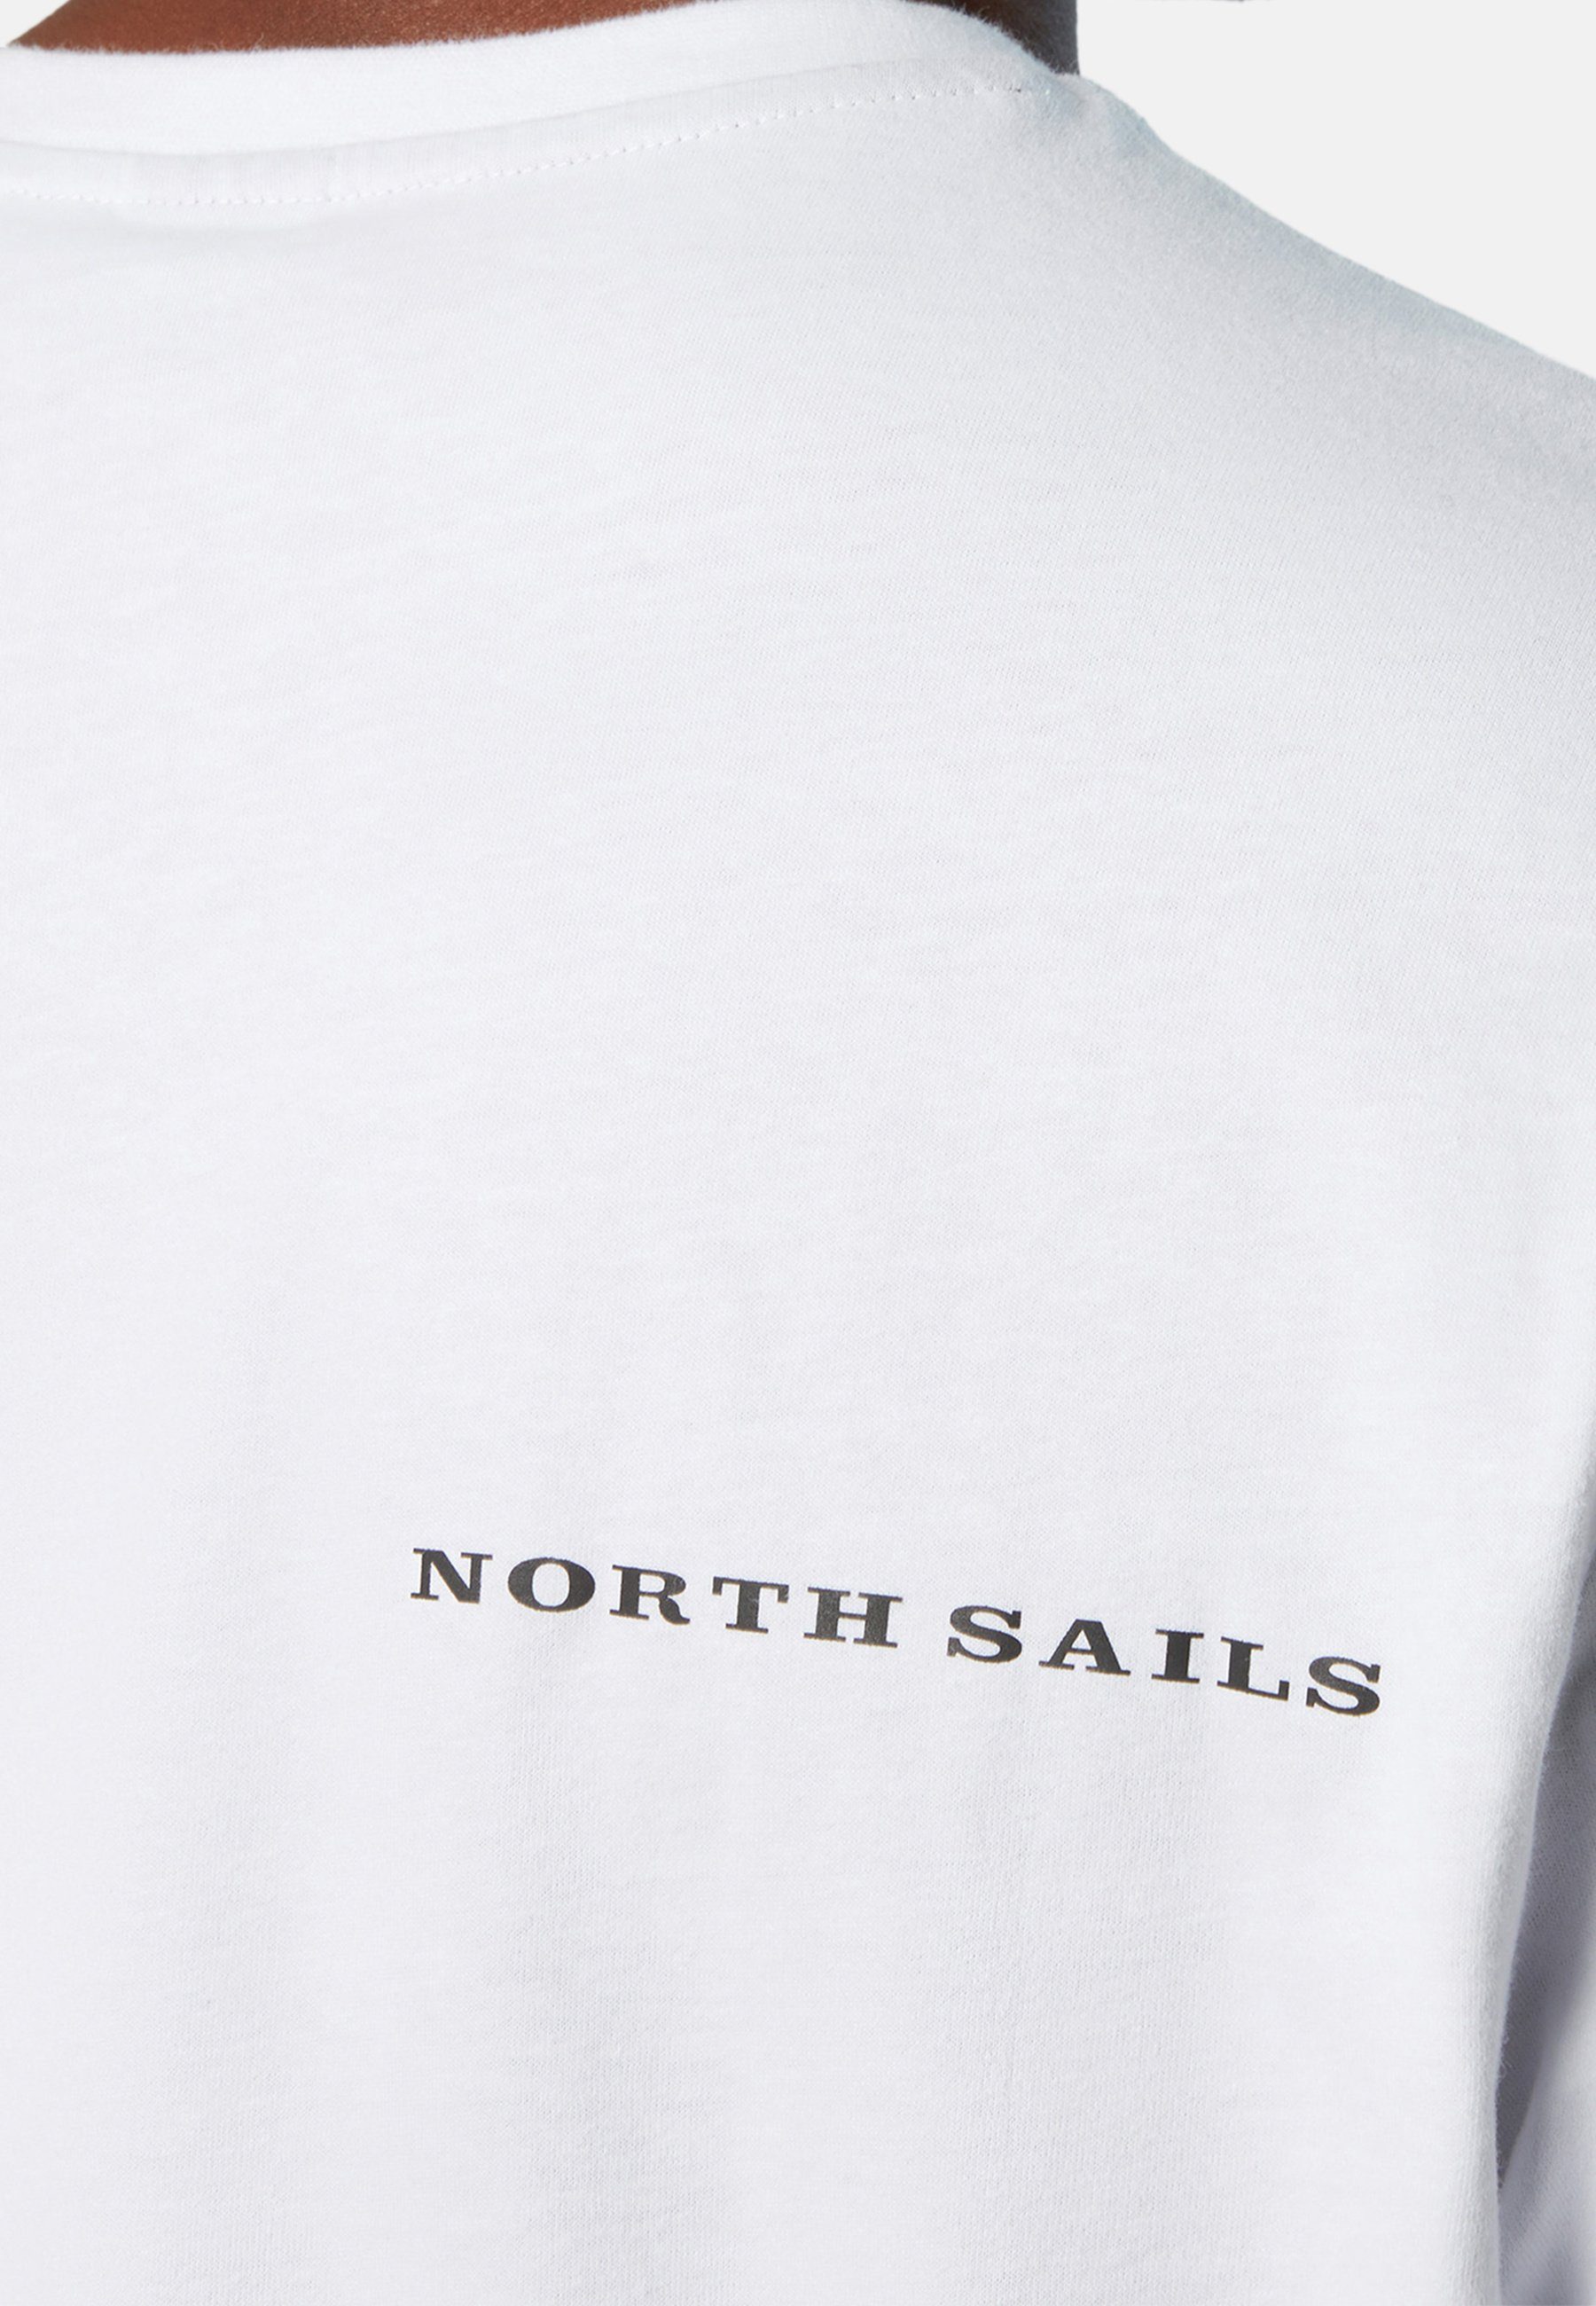 Sails Brusttasche weiss T-Shirt Sonstiges T-Shirt mit North